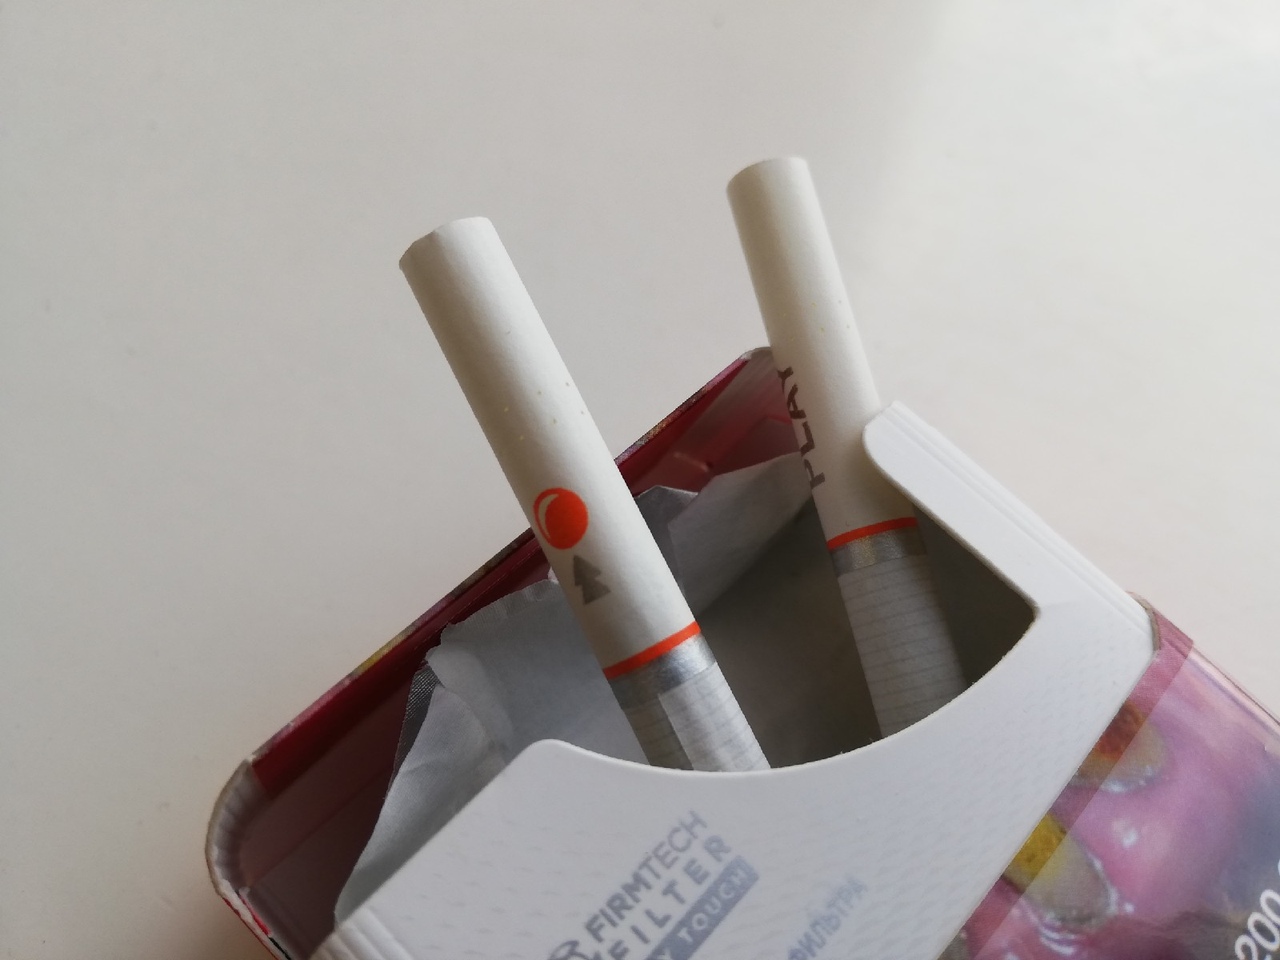 14 табачных магазинов в Тульской области получили штрафы за нарушения продажи сигарет